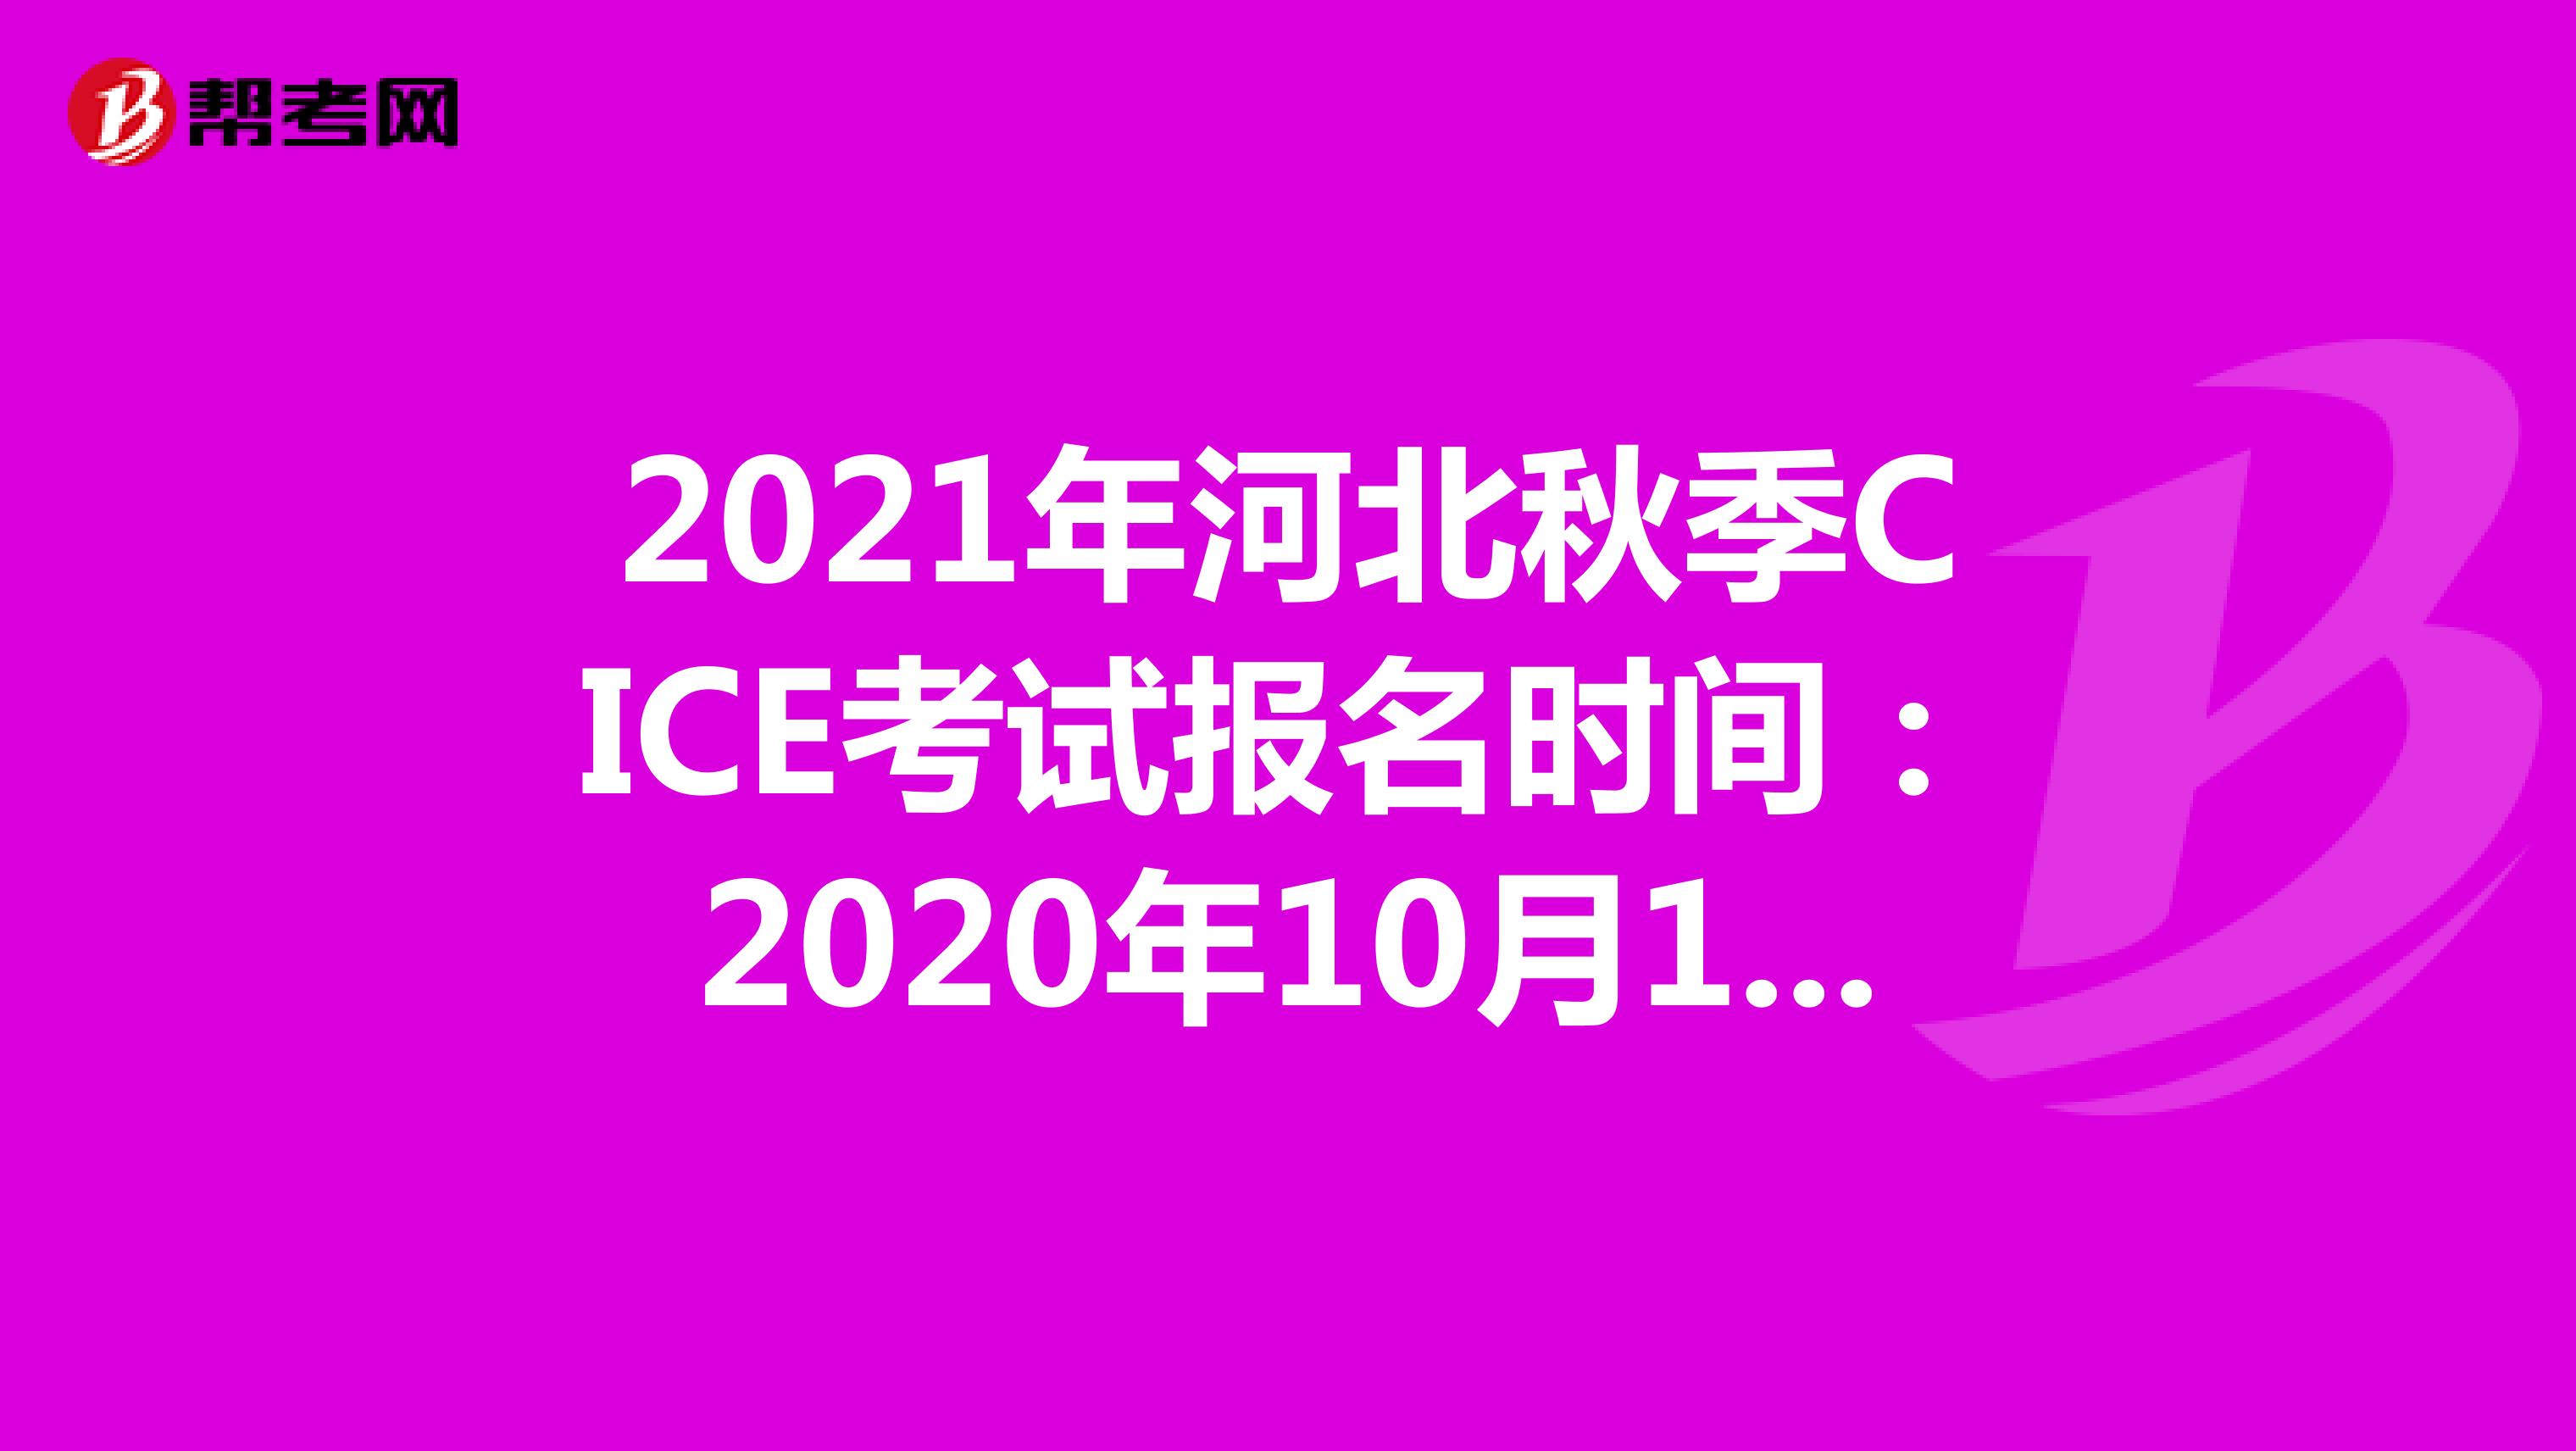 2021年河北秋季CICE考试报名时间：2020年10月19日-2021年8月31日